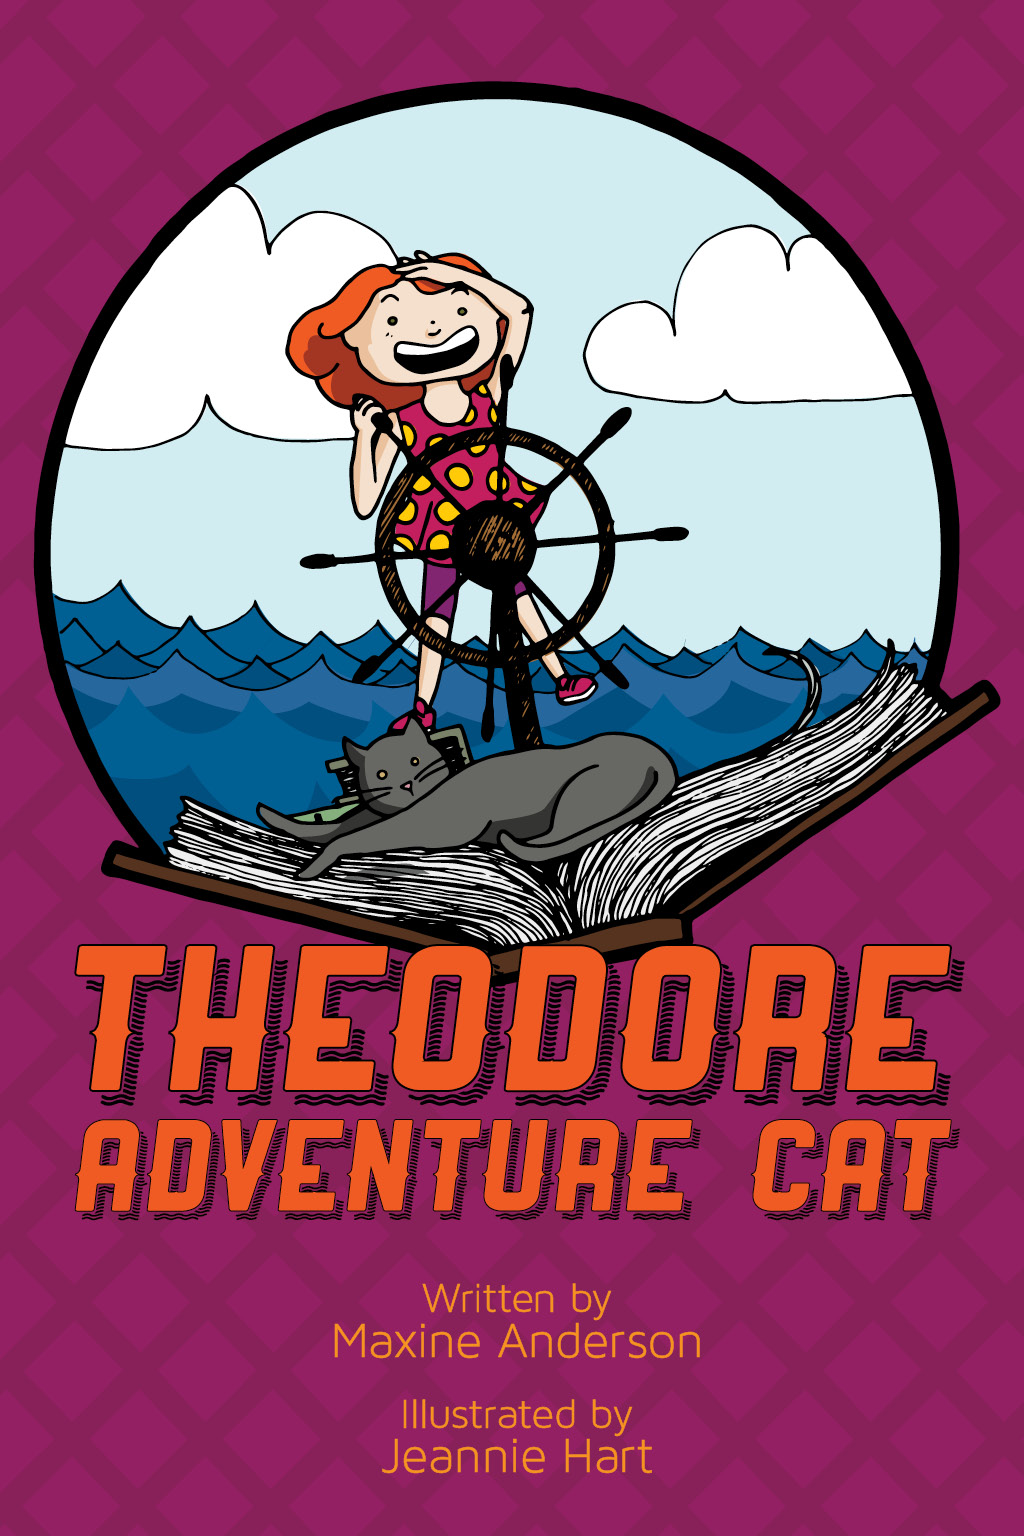 Theodore Adventure Cat – Children’s Book Illustration